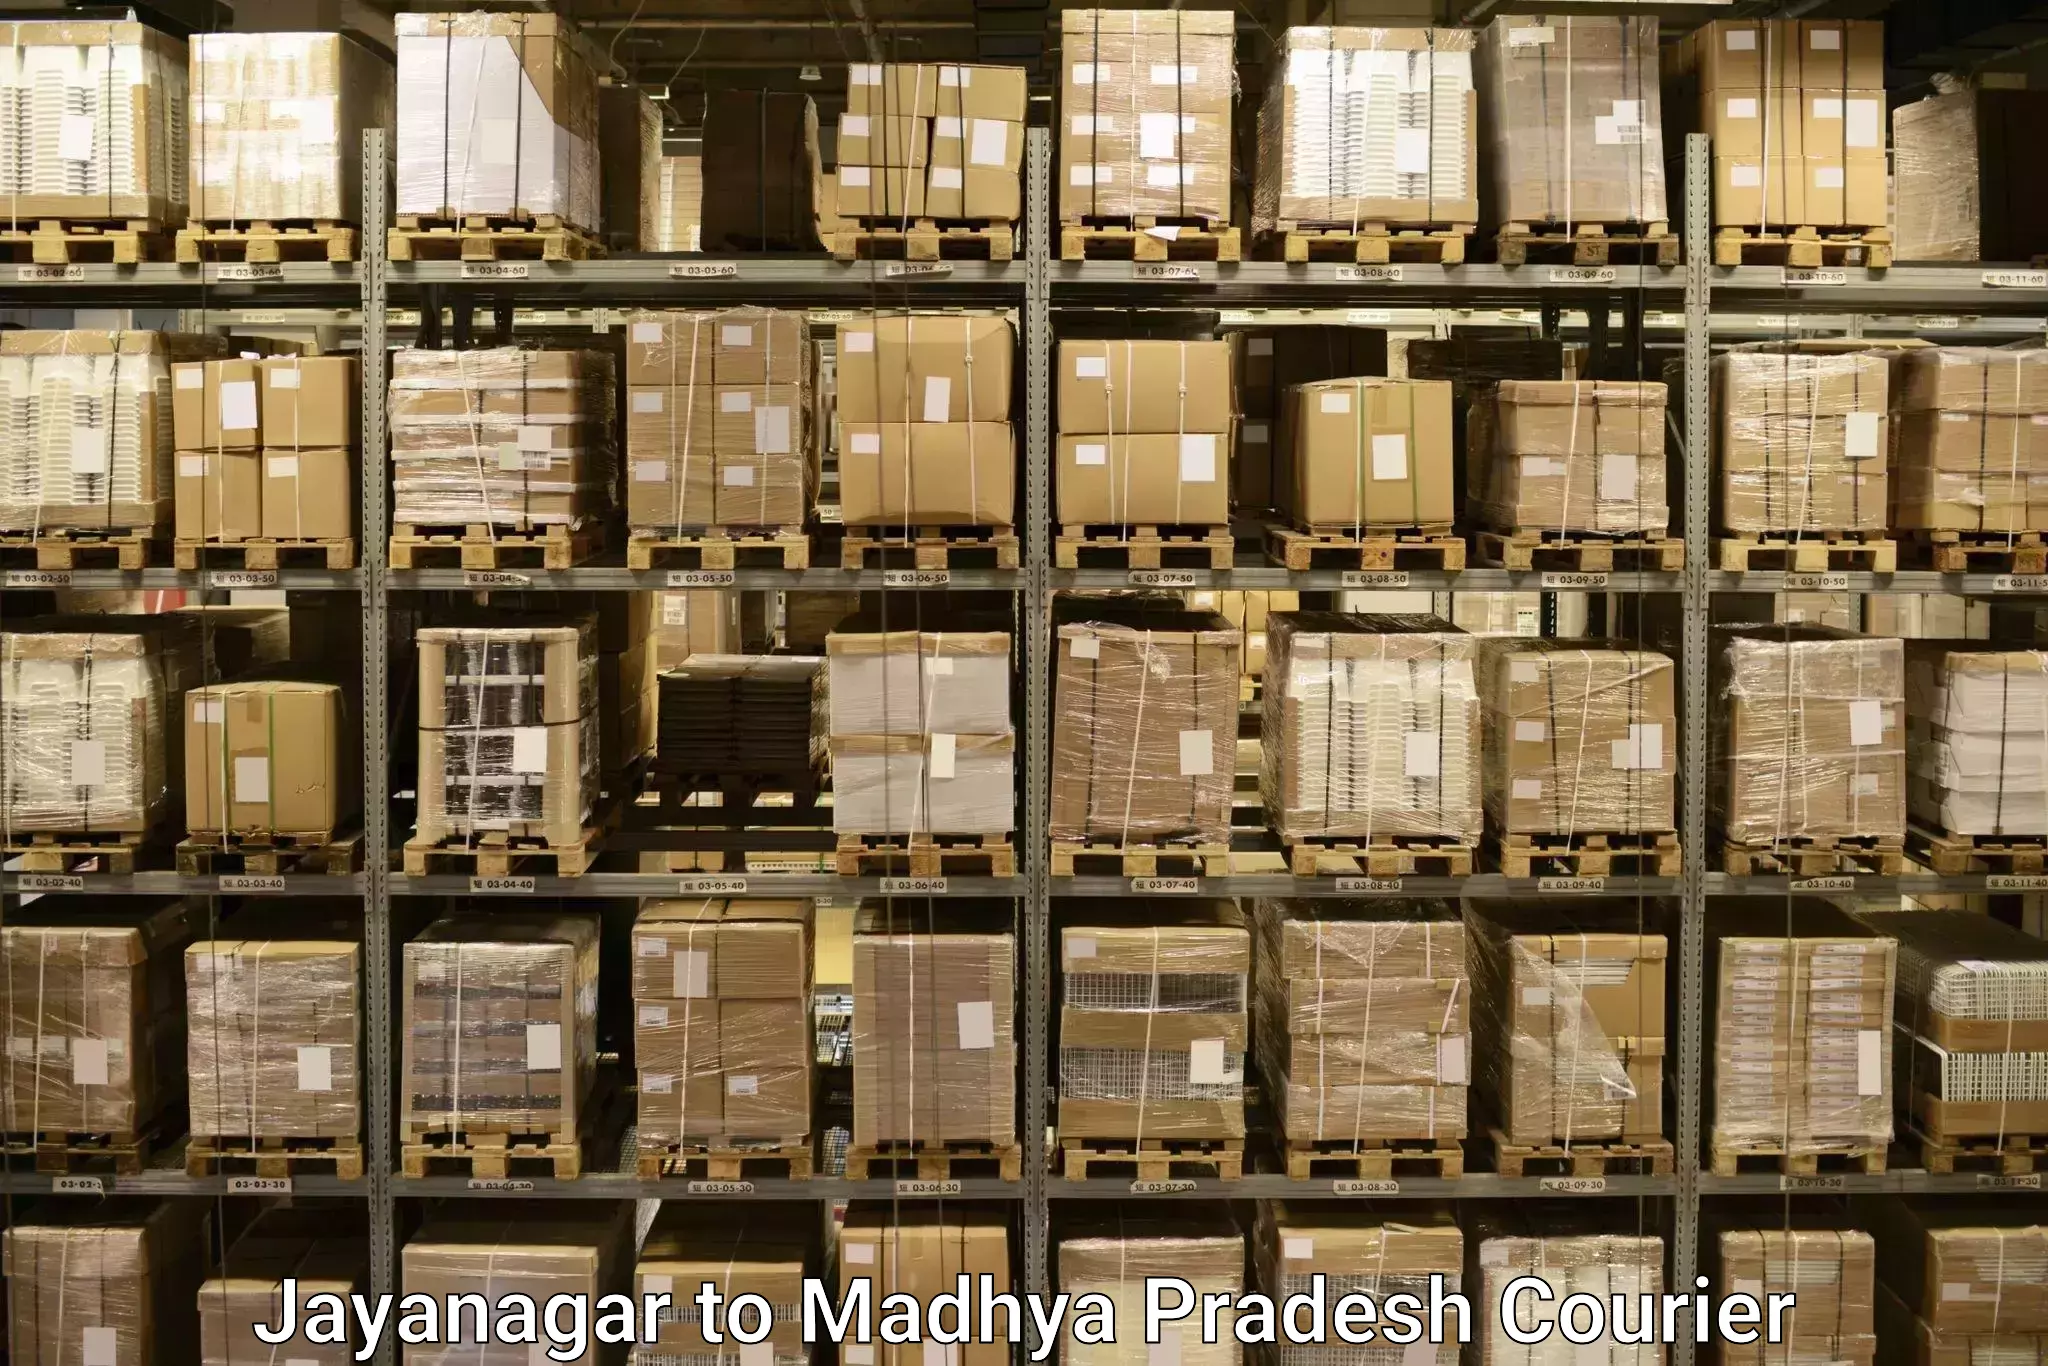 Baggage transport network Jayanagar to Nalkheda